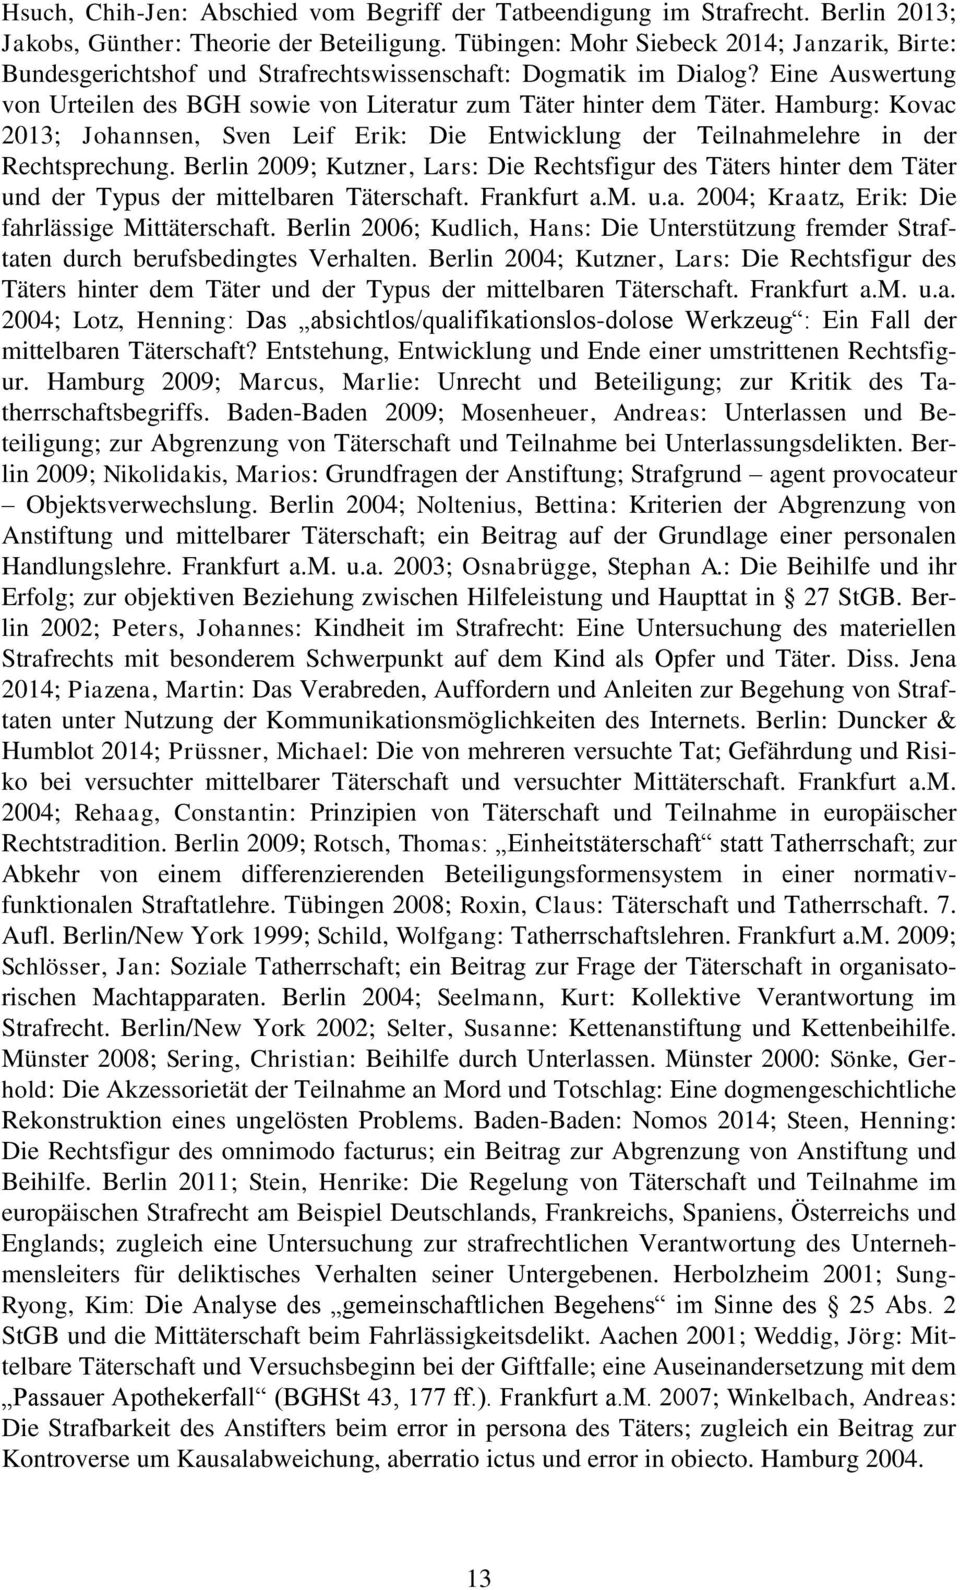 Hamburg: Kovac 2013; Johannsen, Sven Leif Erik: Die Entwicklung der Teilnahmelehre in der Rechtsprechung.